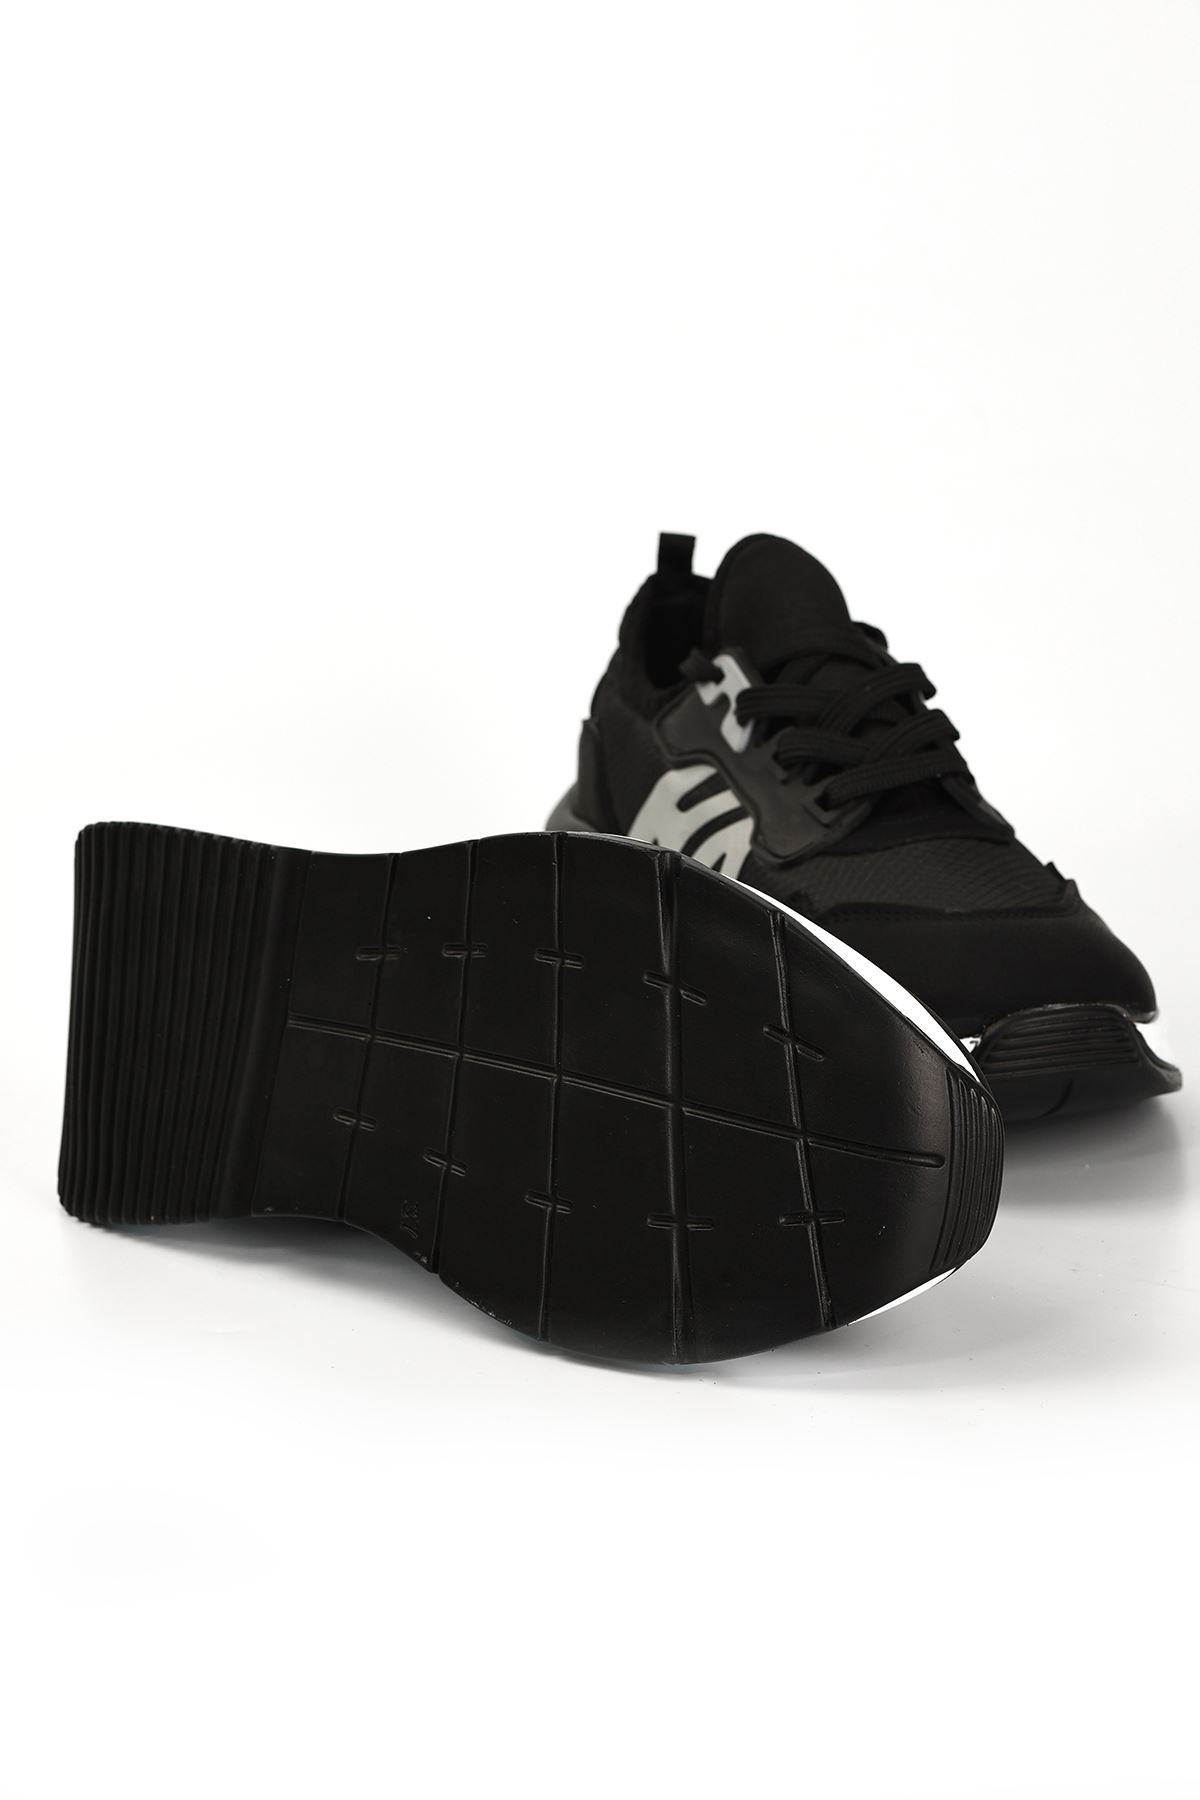 Salamanca Nubuk Fileli Bağcıklı Kadın Sneakers Spor Ayakkabı Siyah